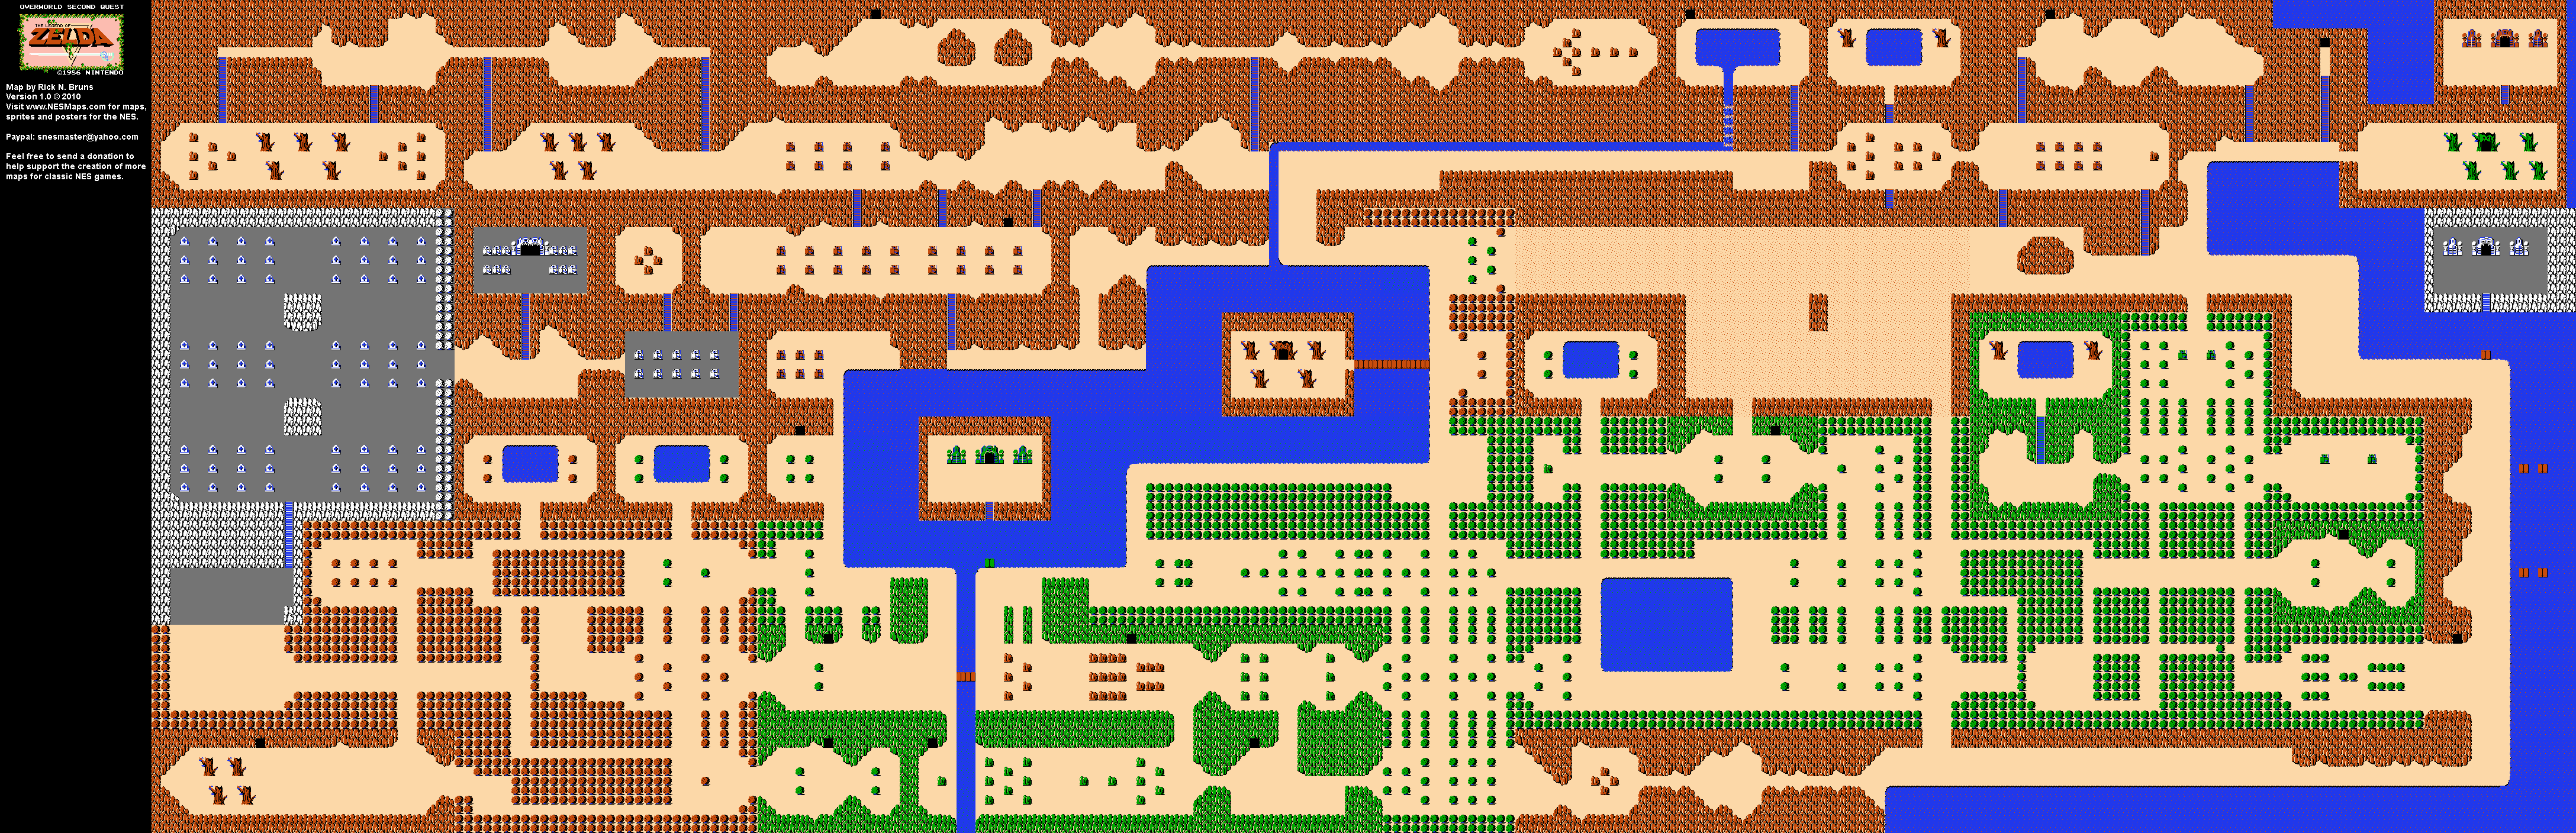 The Legend of Zelda - Overworld Quest 2 - NES Map BG